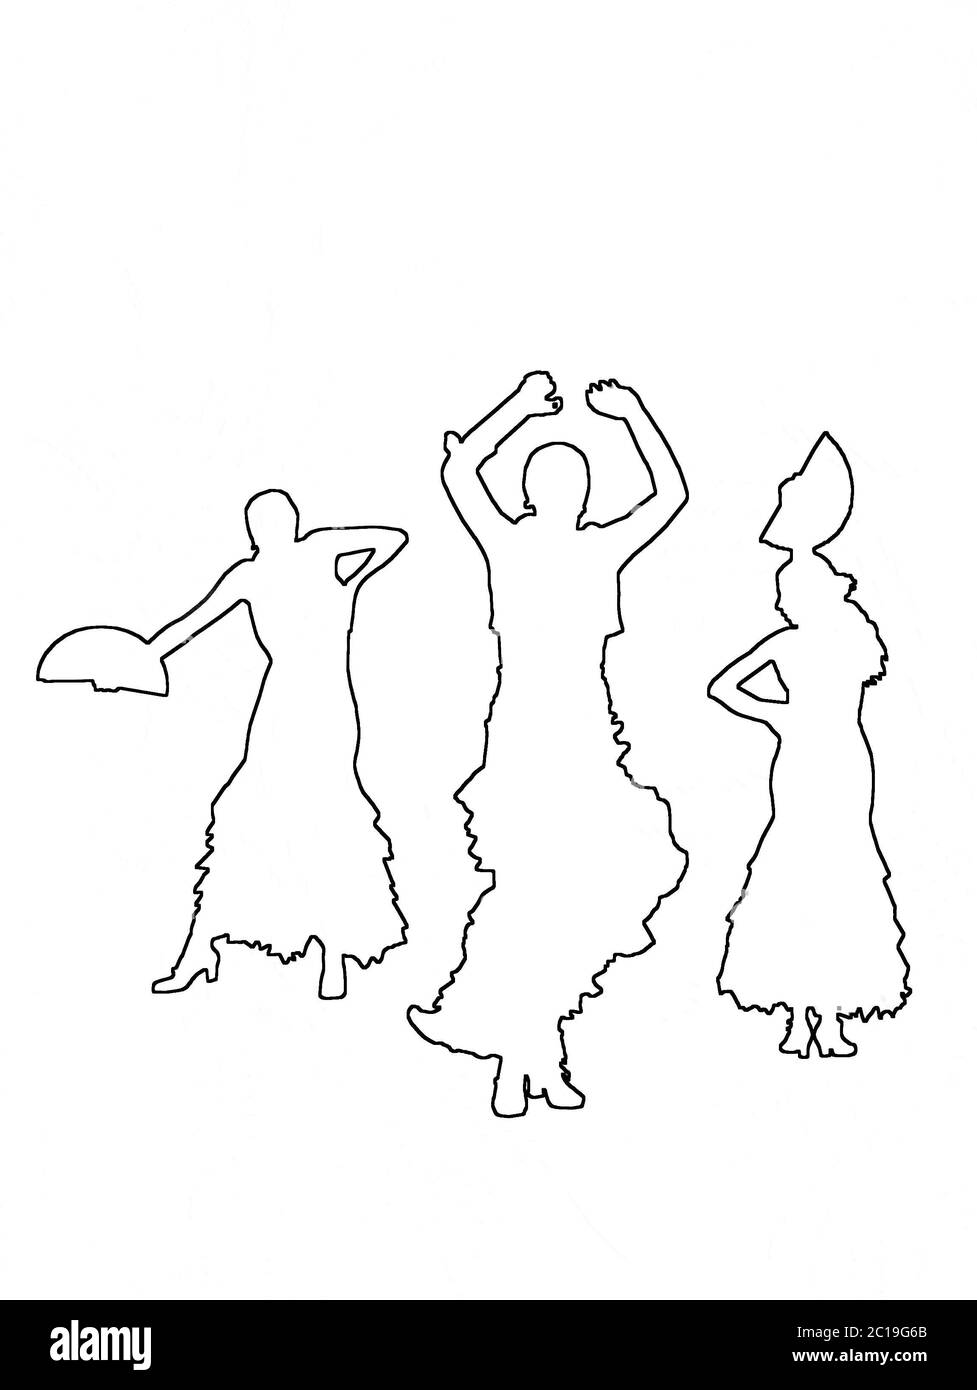 Sagome di tre ballerine femminili di flamenco Foto Stock